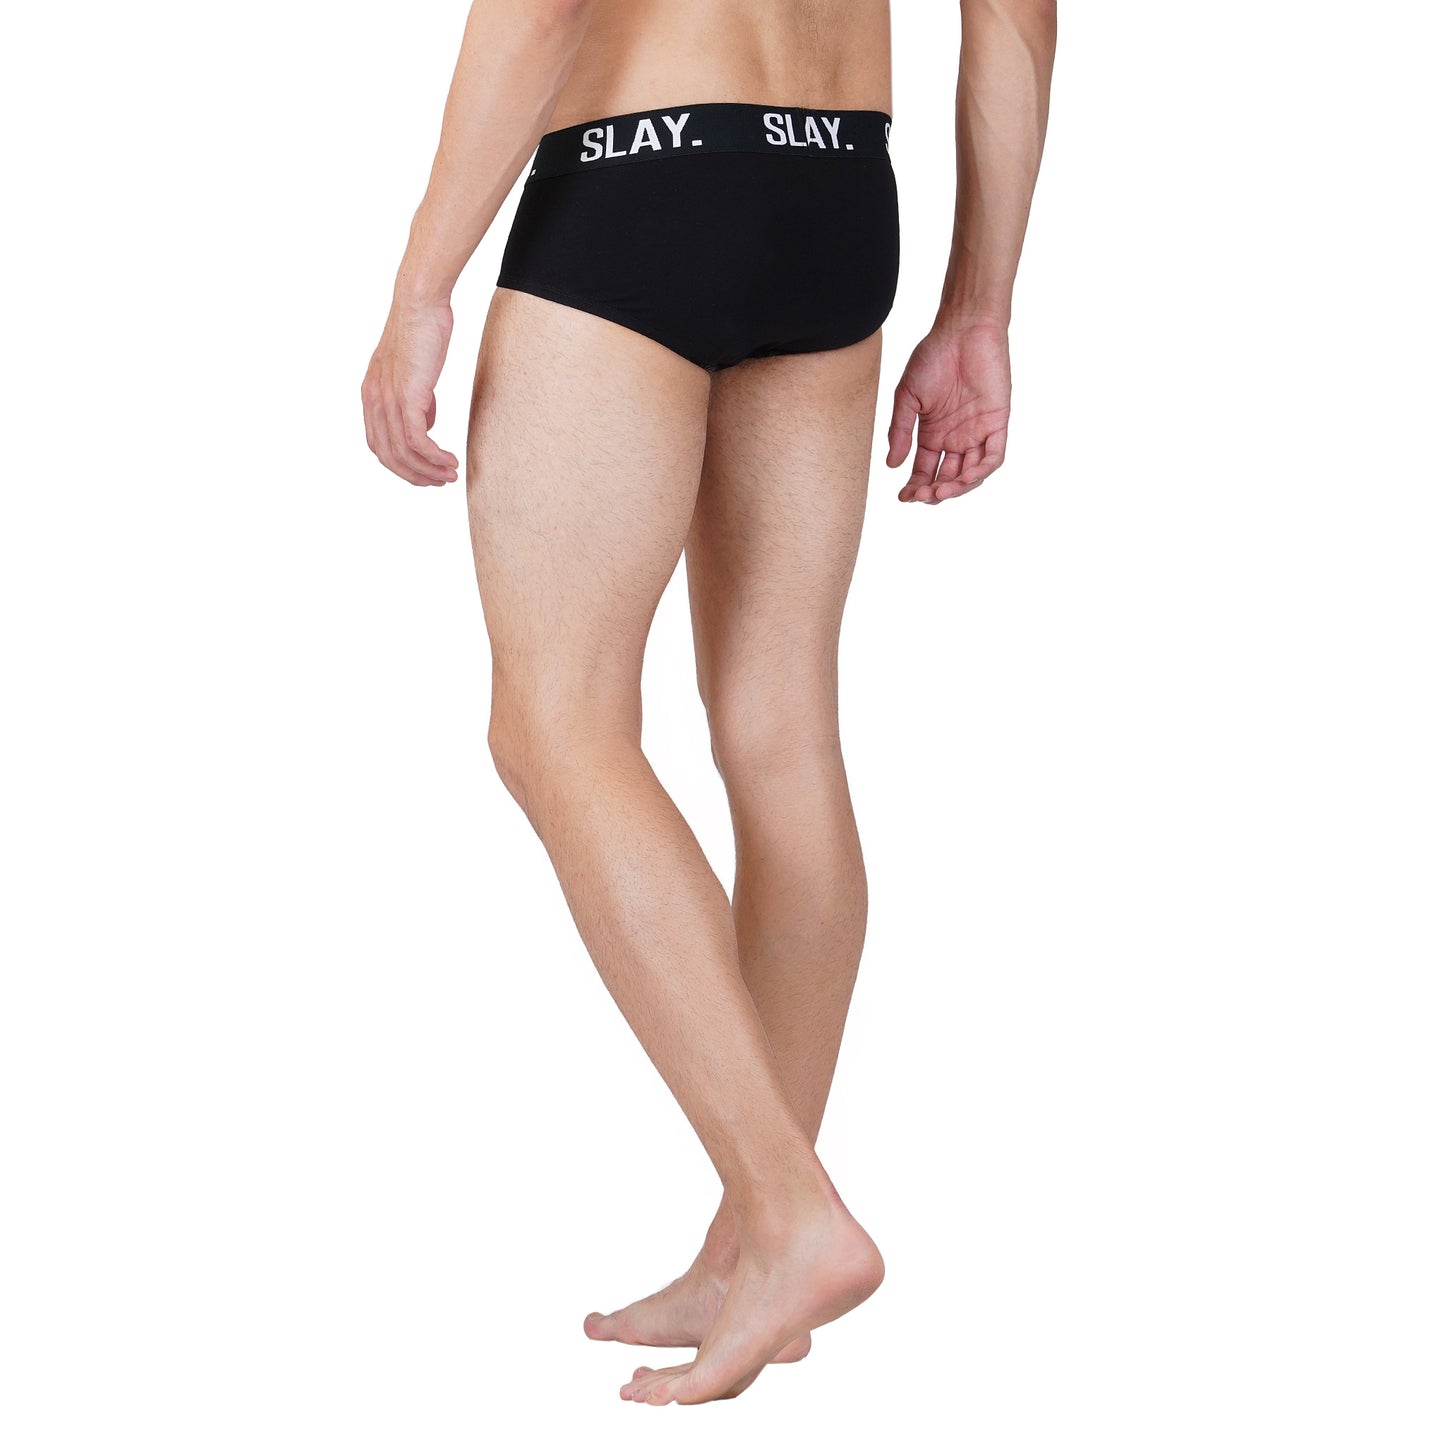 SLAY. Men's Black Underwear Cotton Briefs